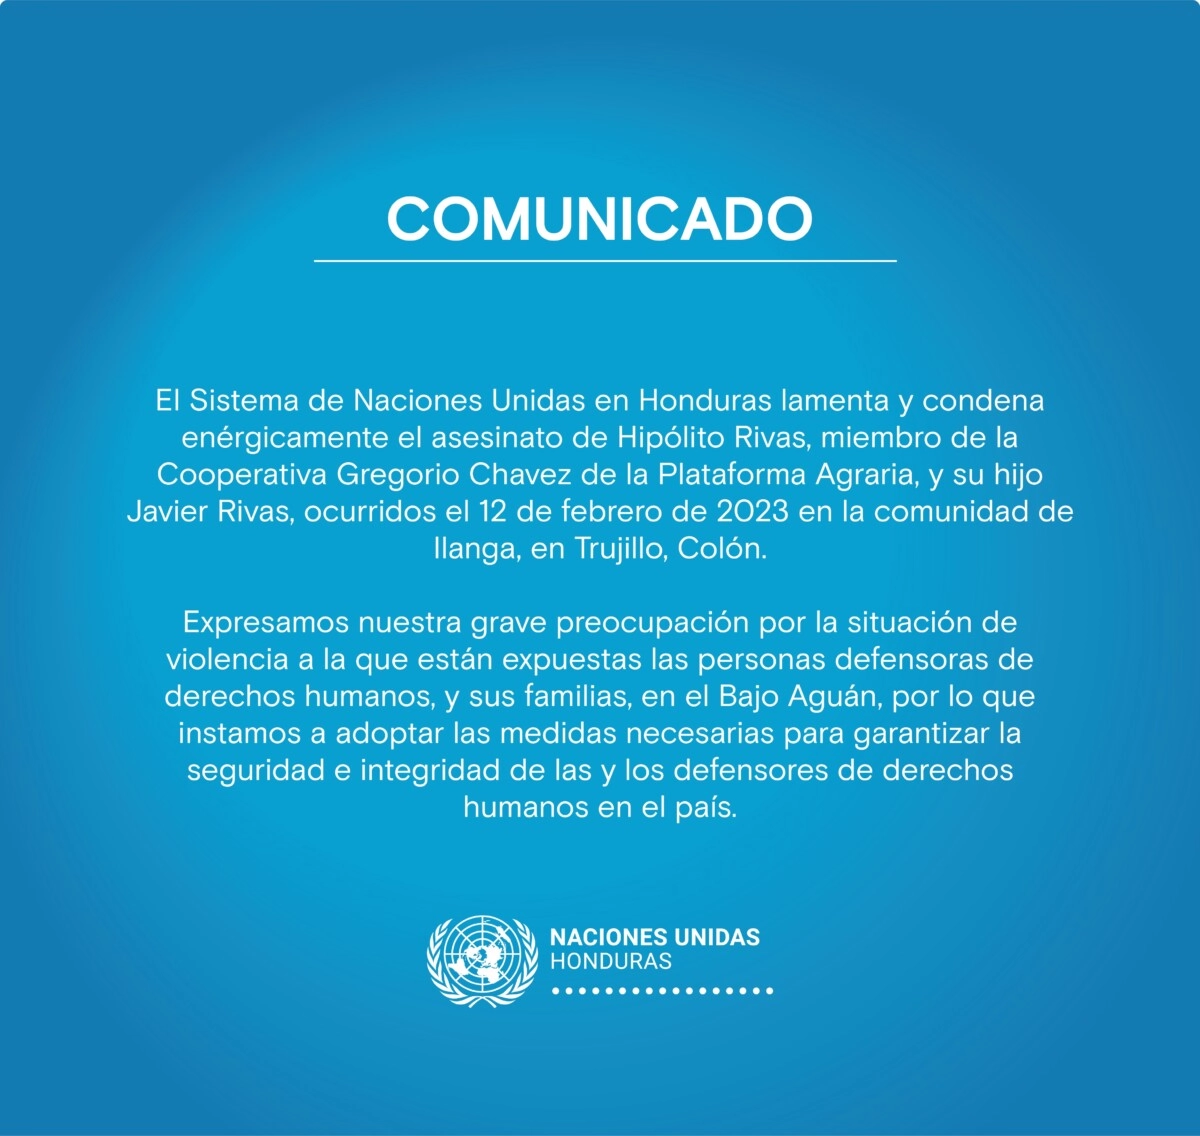 El Sistema de Naciones Unidas en Honduras expresa su preocupación por la situación de violencia en el Bajo Aguán